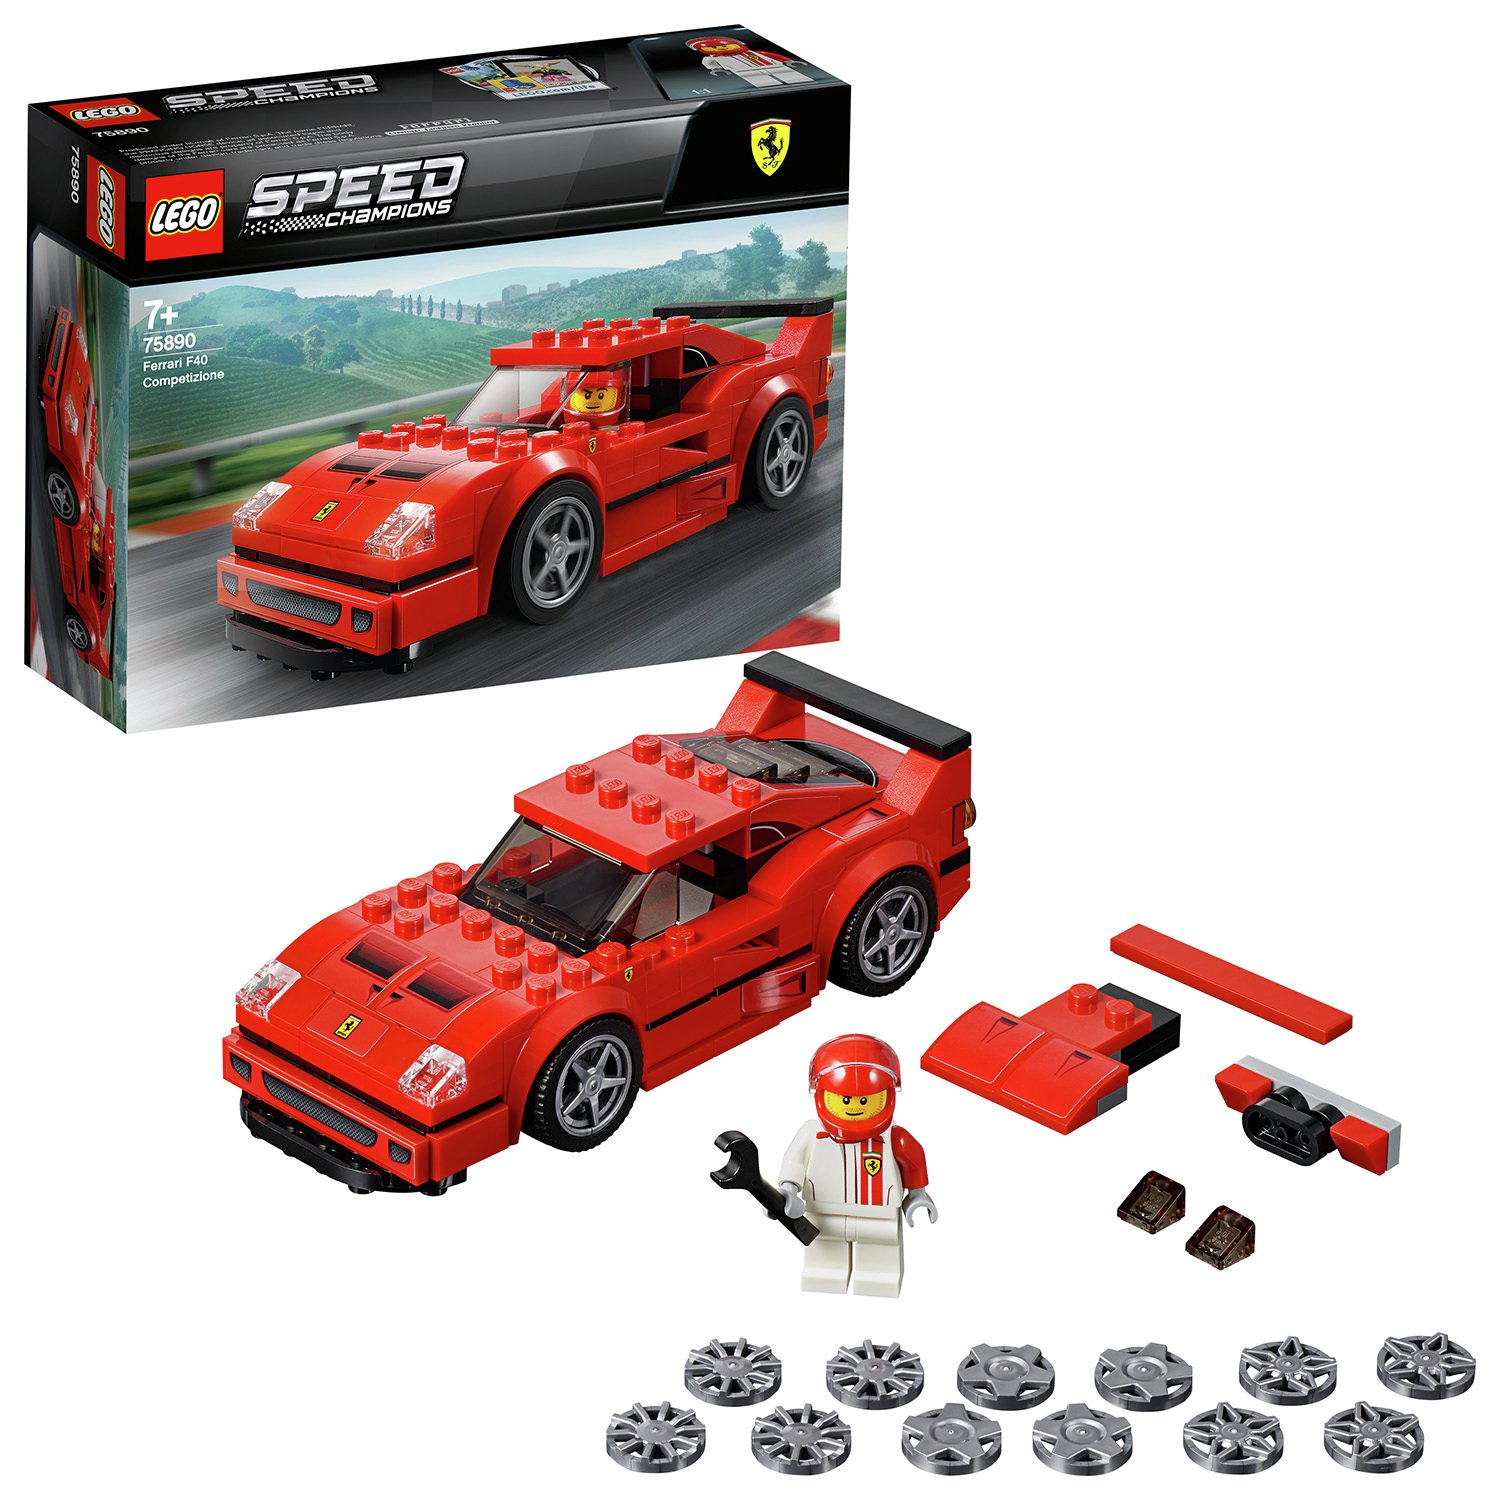 LEGO Speed Champions Ferrari F40 Toy Car Model - 75890